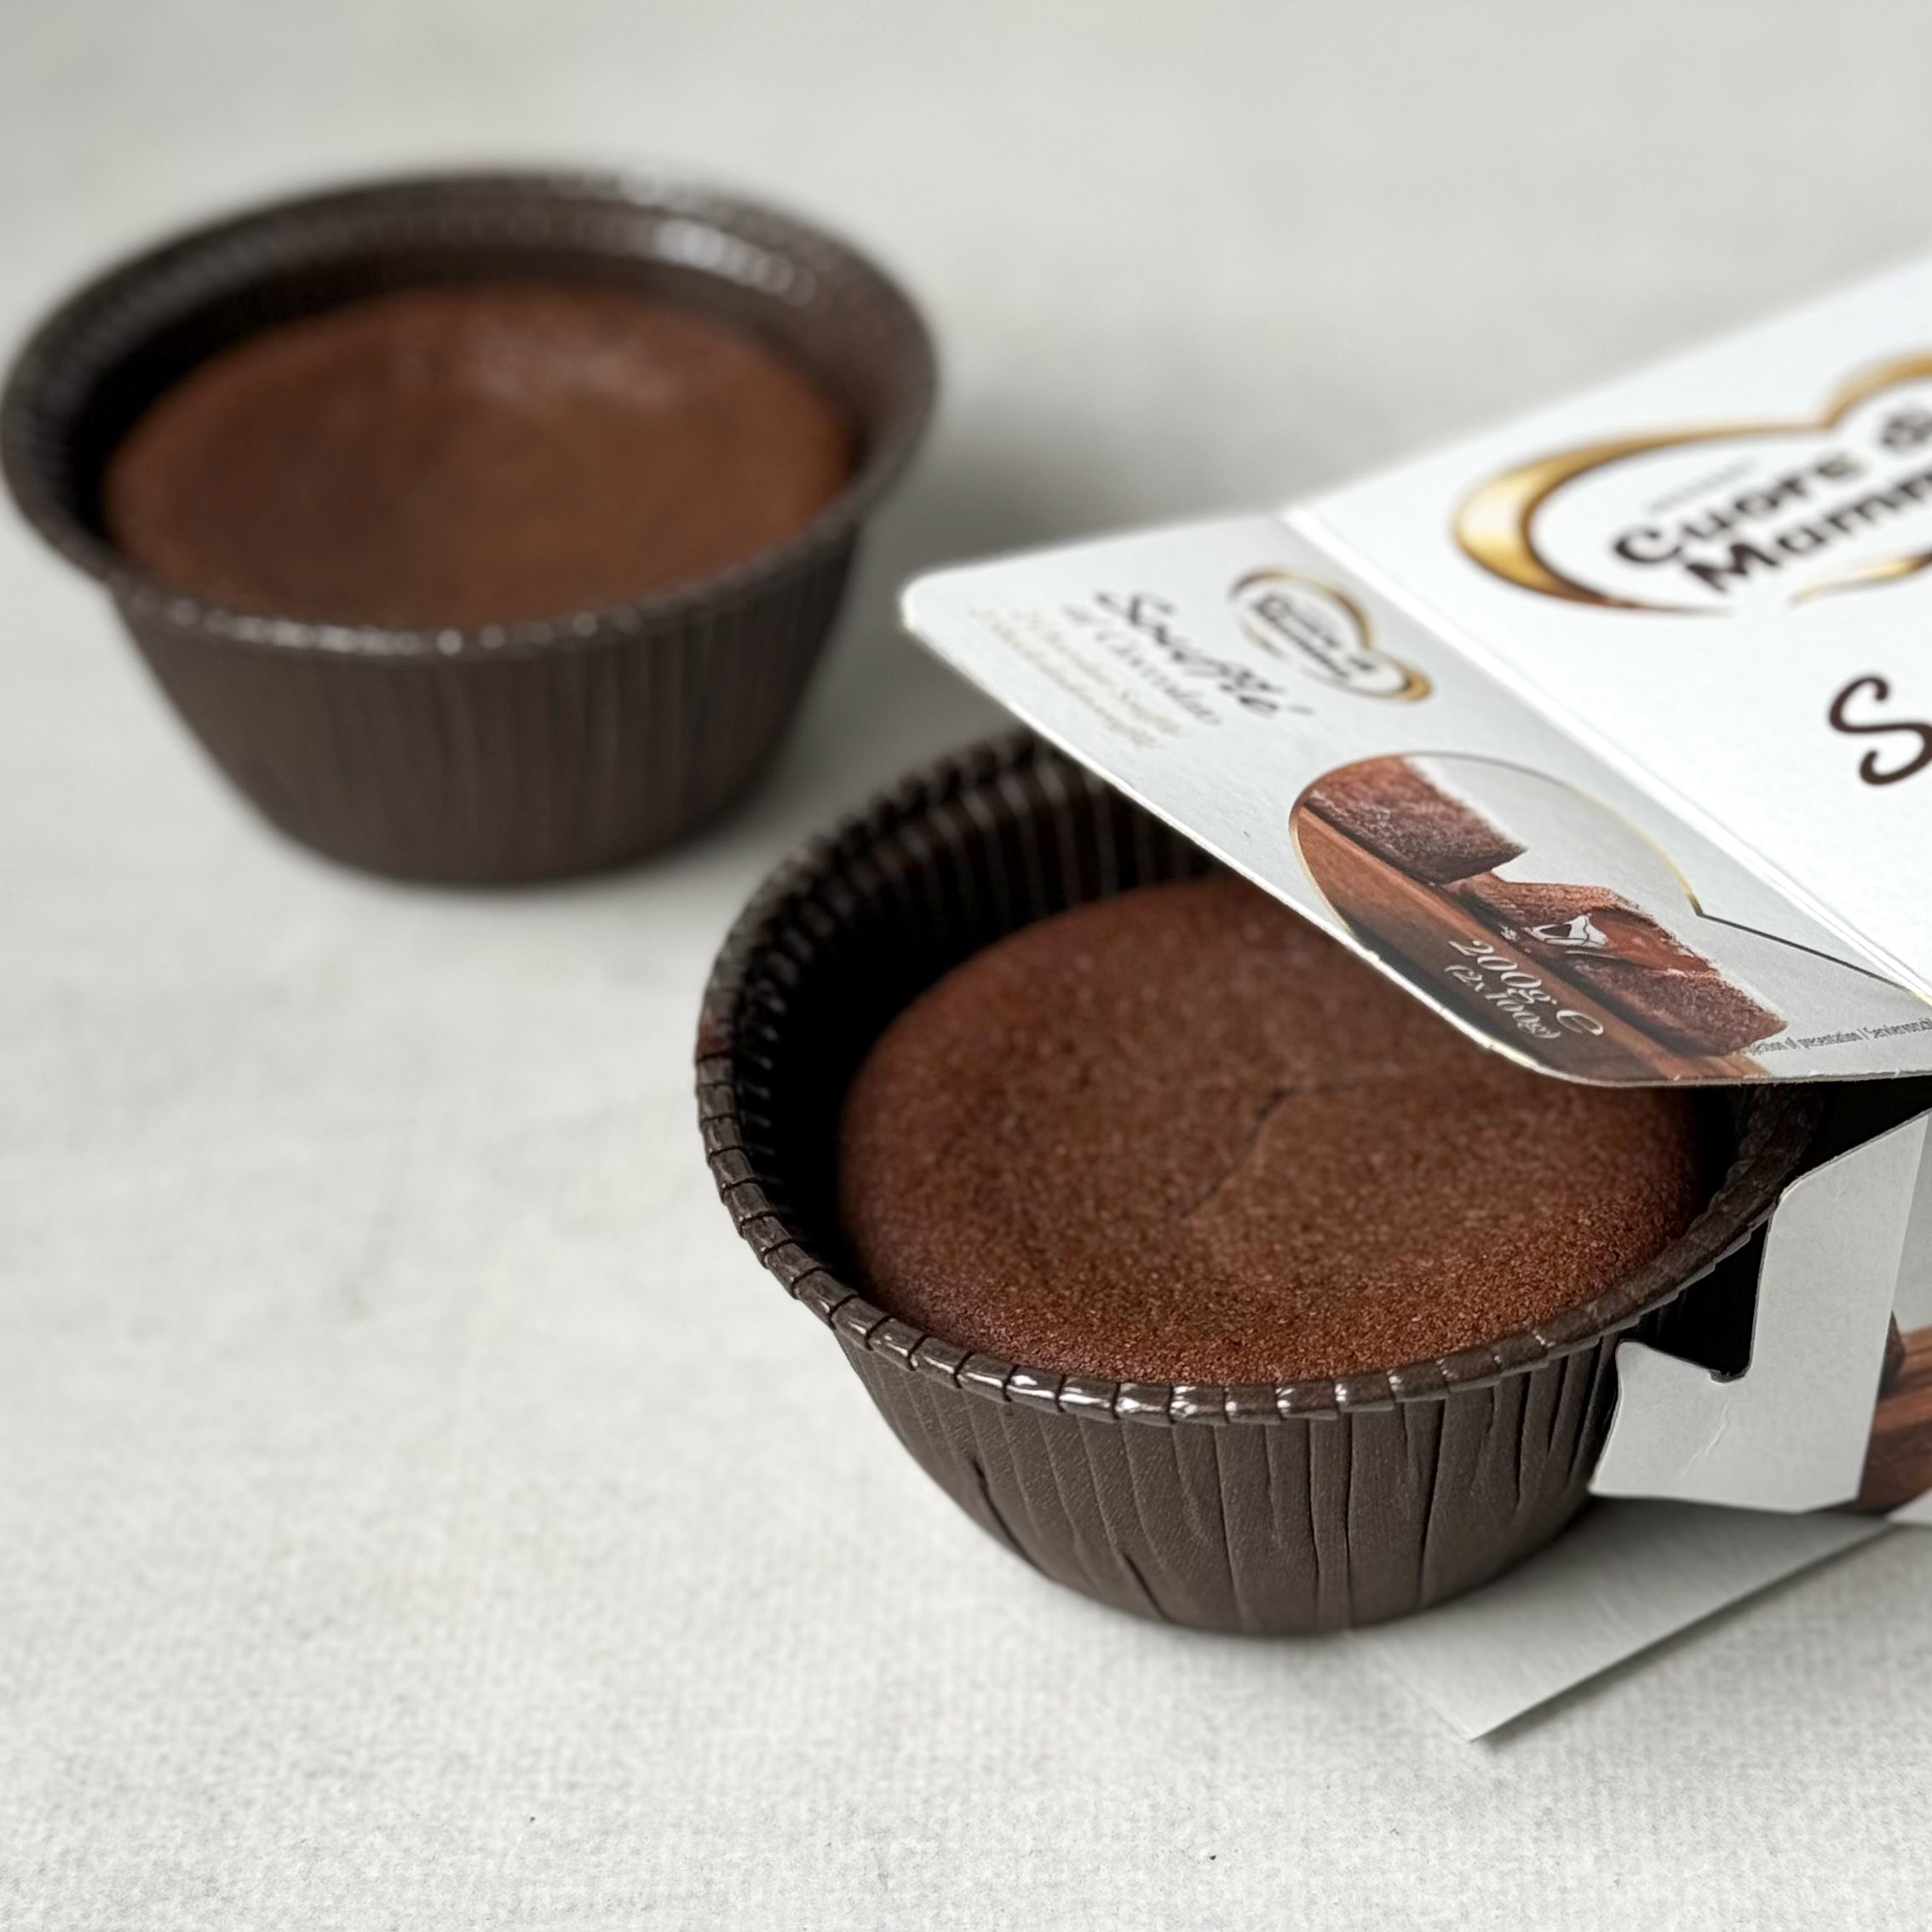 Пирожное из темного шоколада «BarryCallebaut» (Южная Америка) с жидким шоколадом внутри. изображение 6